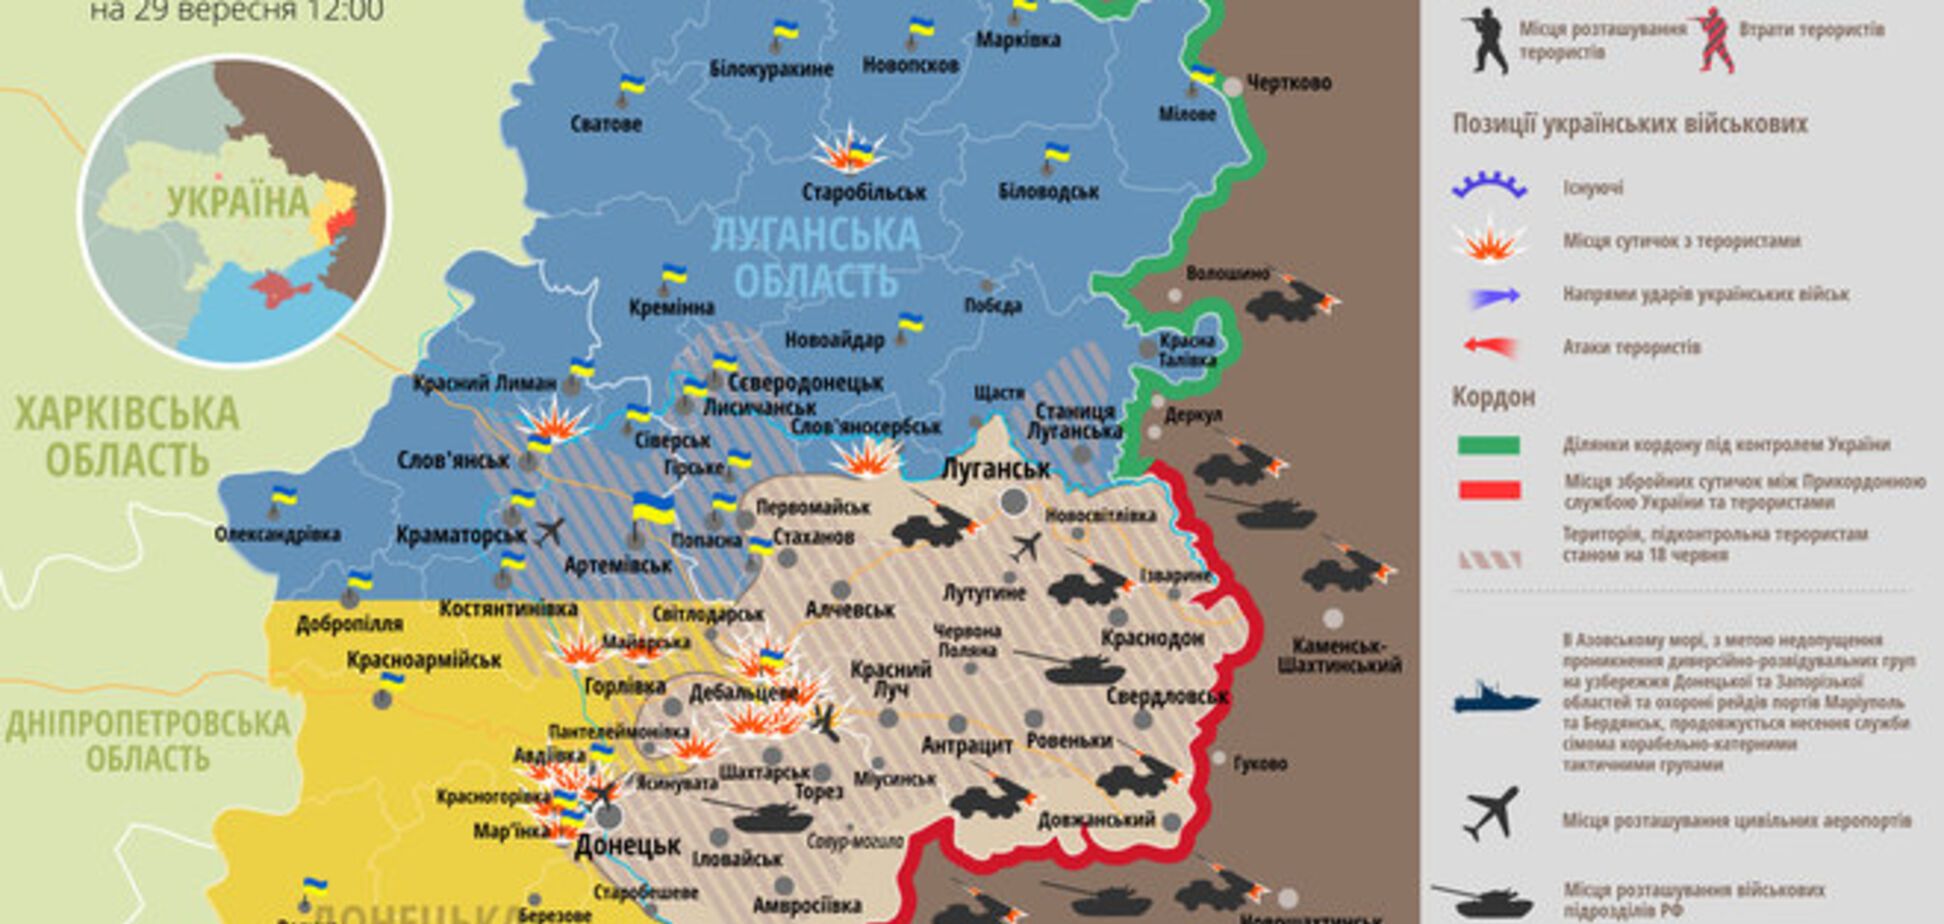 Терористи припинили обстріли позицій сил АТО по всьому фронту: мапа зони АТО